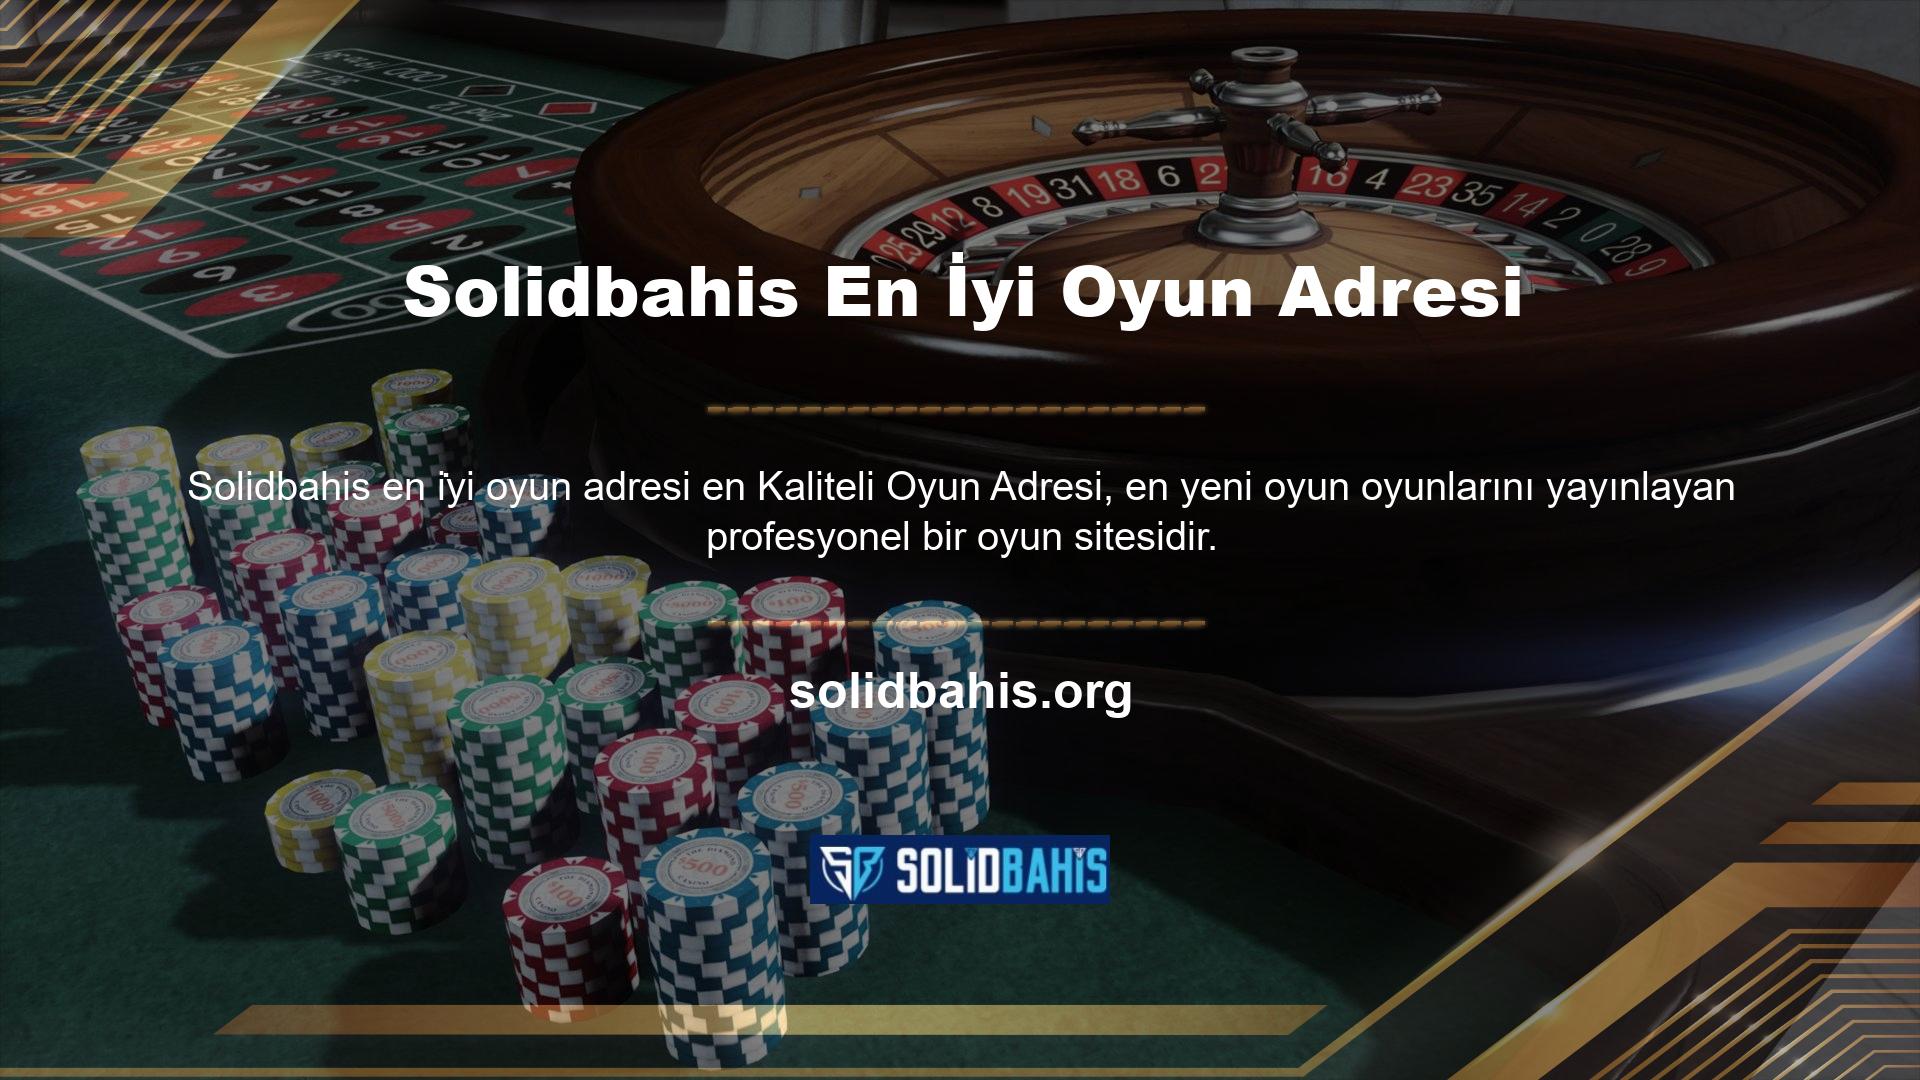 Solidbahis Online uzun yıllardır oldukça kaliteli hizmet vermekte ve bahis adresleri alanındaki tüm yenilikleri, tecrübeleri ve anlayışları yakından takip etmektedir